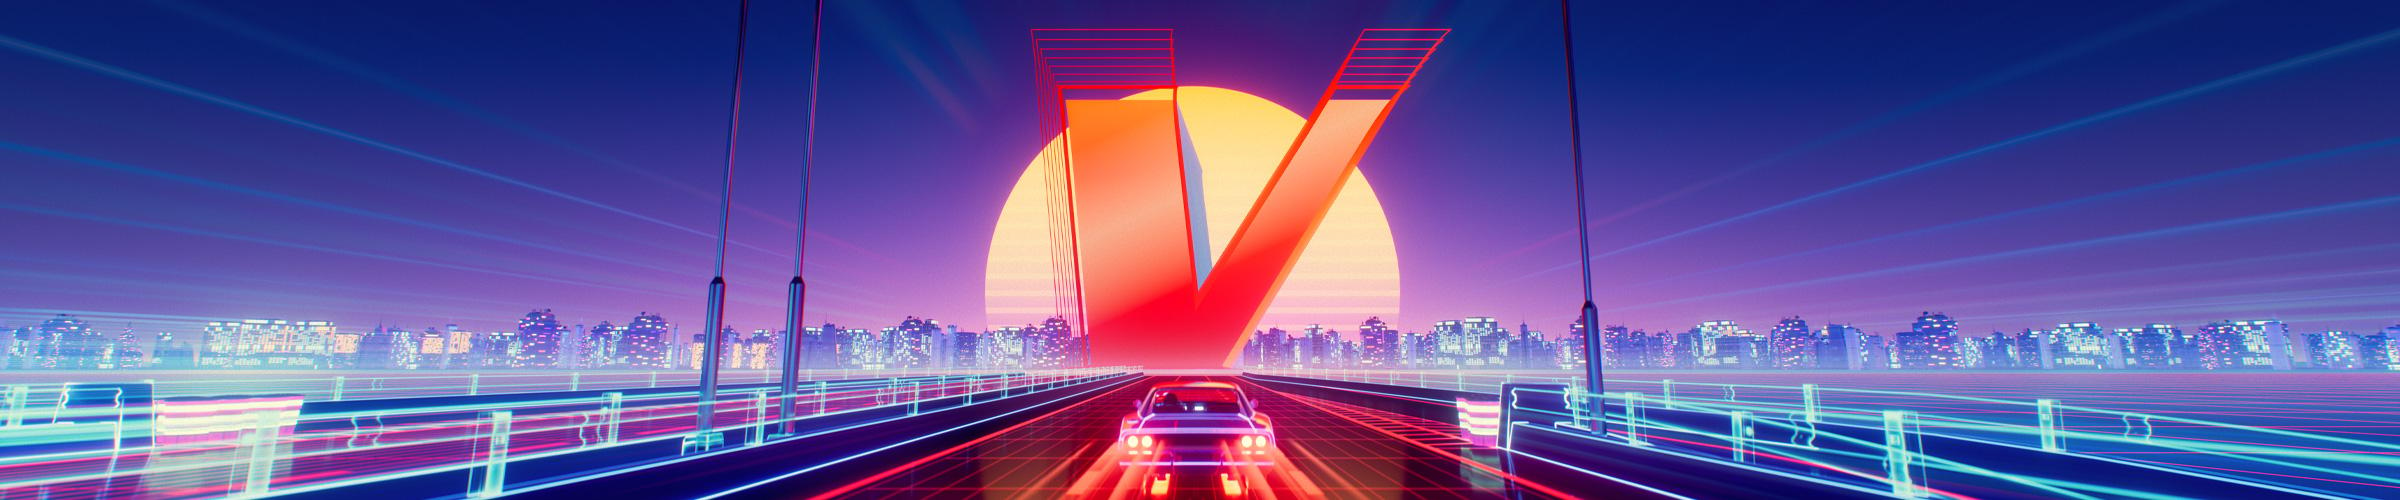 V-logo futuristisen kaupungin horisontissa. Sitä kohti ajaa auto.